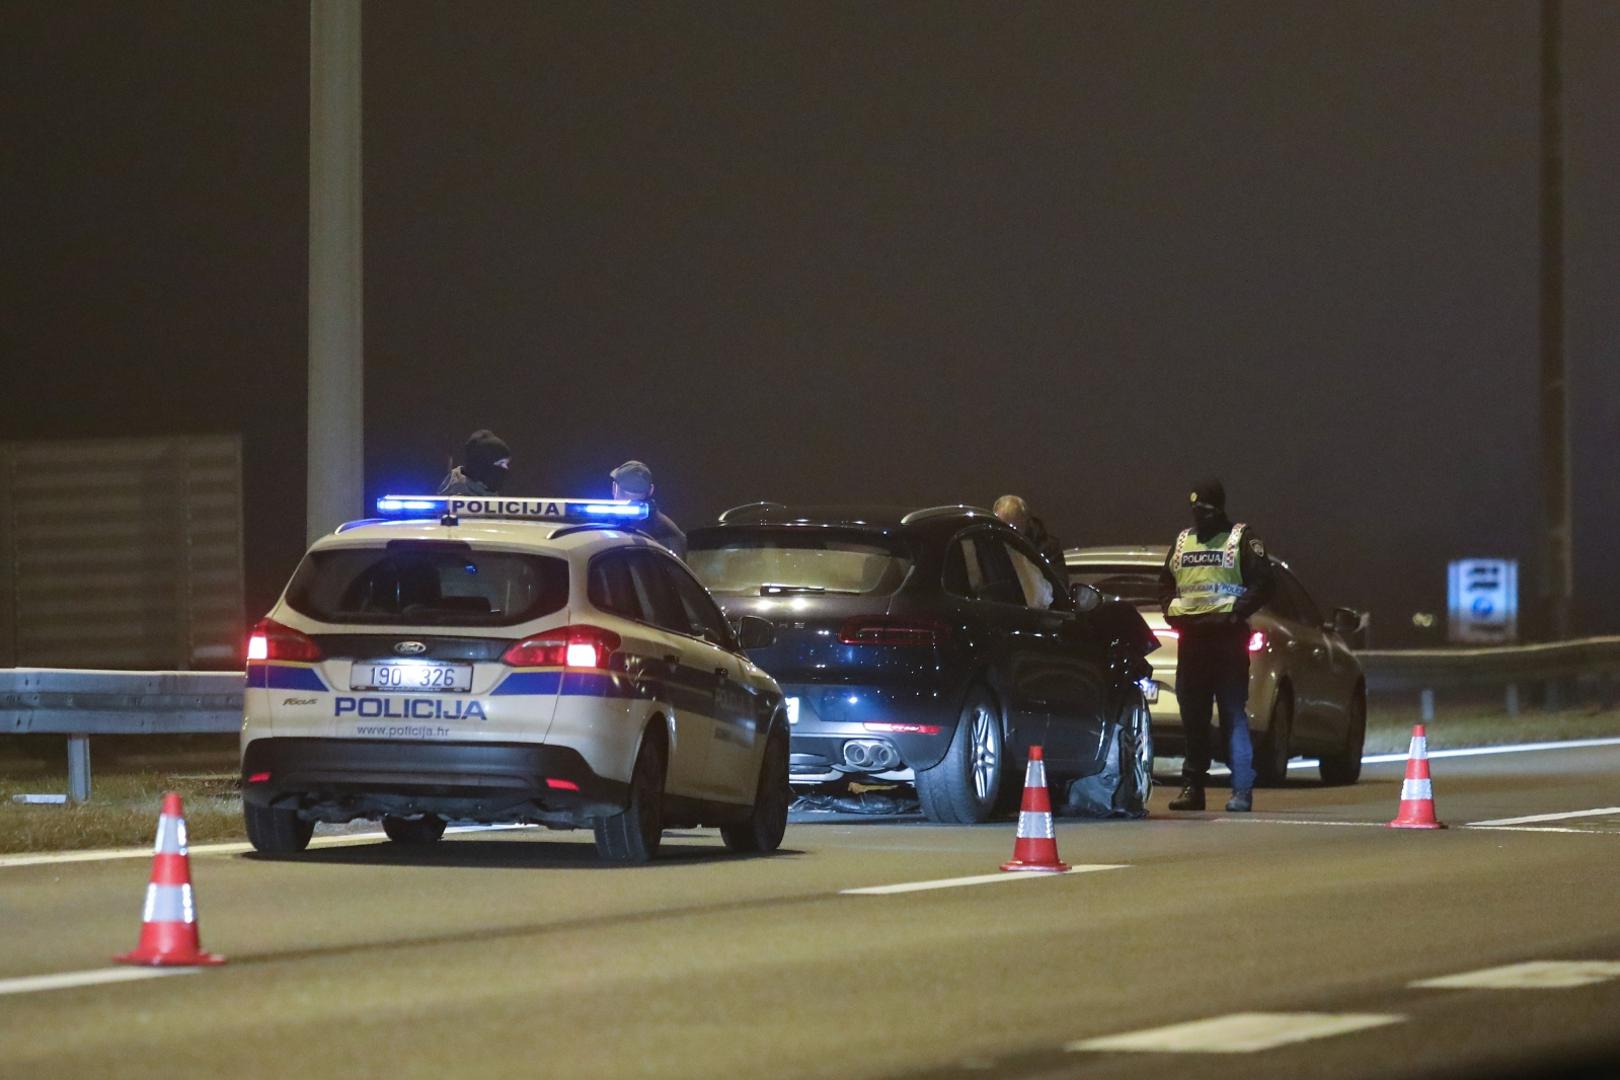 21.12.2020., Zagreb - Na autocesti A3 u smjeru Bregane kod benzinske pumpe Gradna doslo je do teske prometne nesrece u kojoj su sudjelovala dva motorna vozila. 
Photo: Tomislav Miletic/PIXSELL